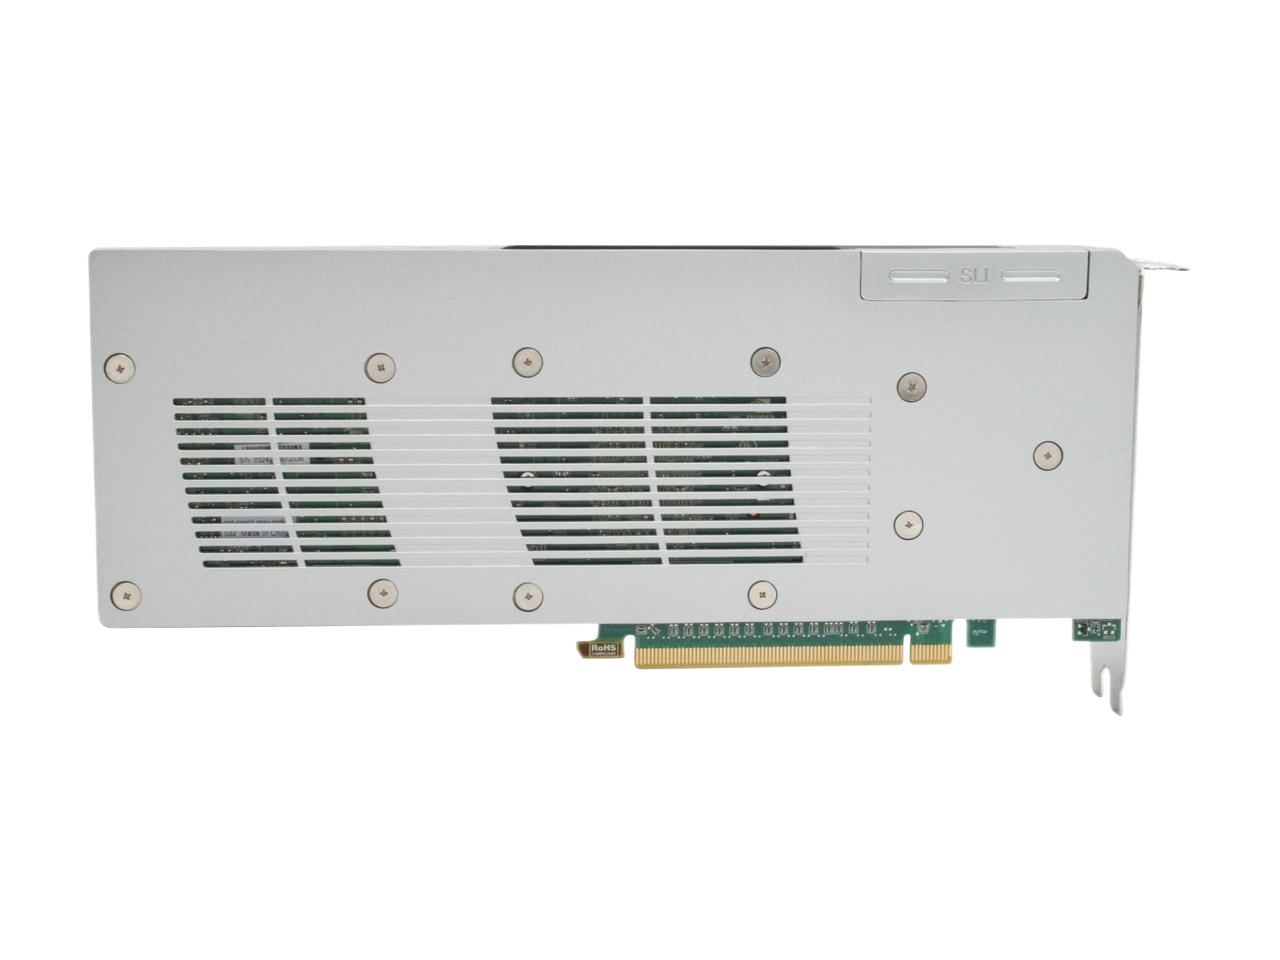 Dell Quadro FX 5800 4GB 512-bit GDDR3 PCI Express 2.0 x16 SLI Workstation Video Card 01HKHC